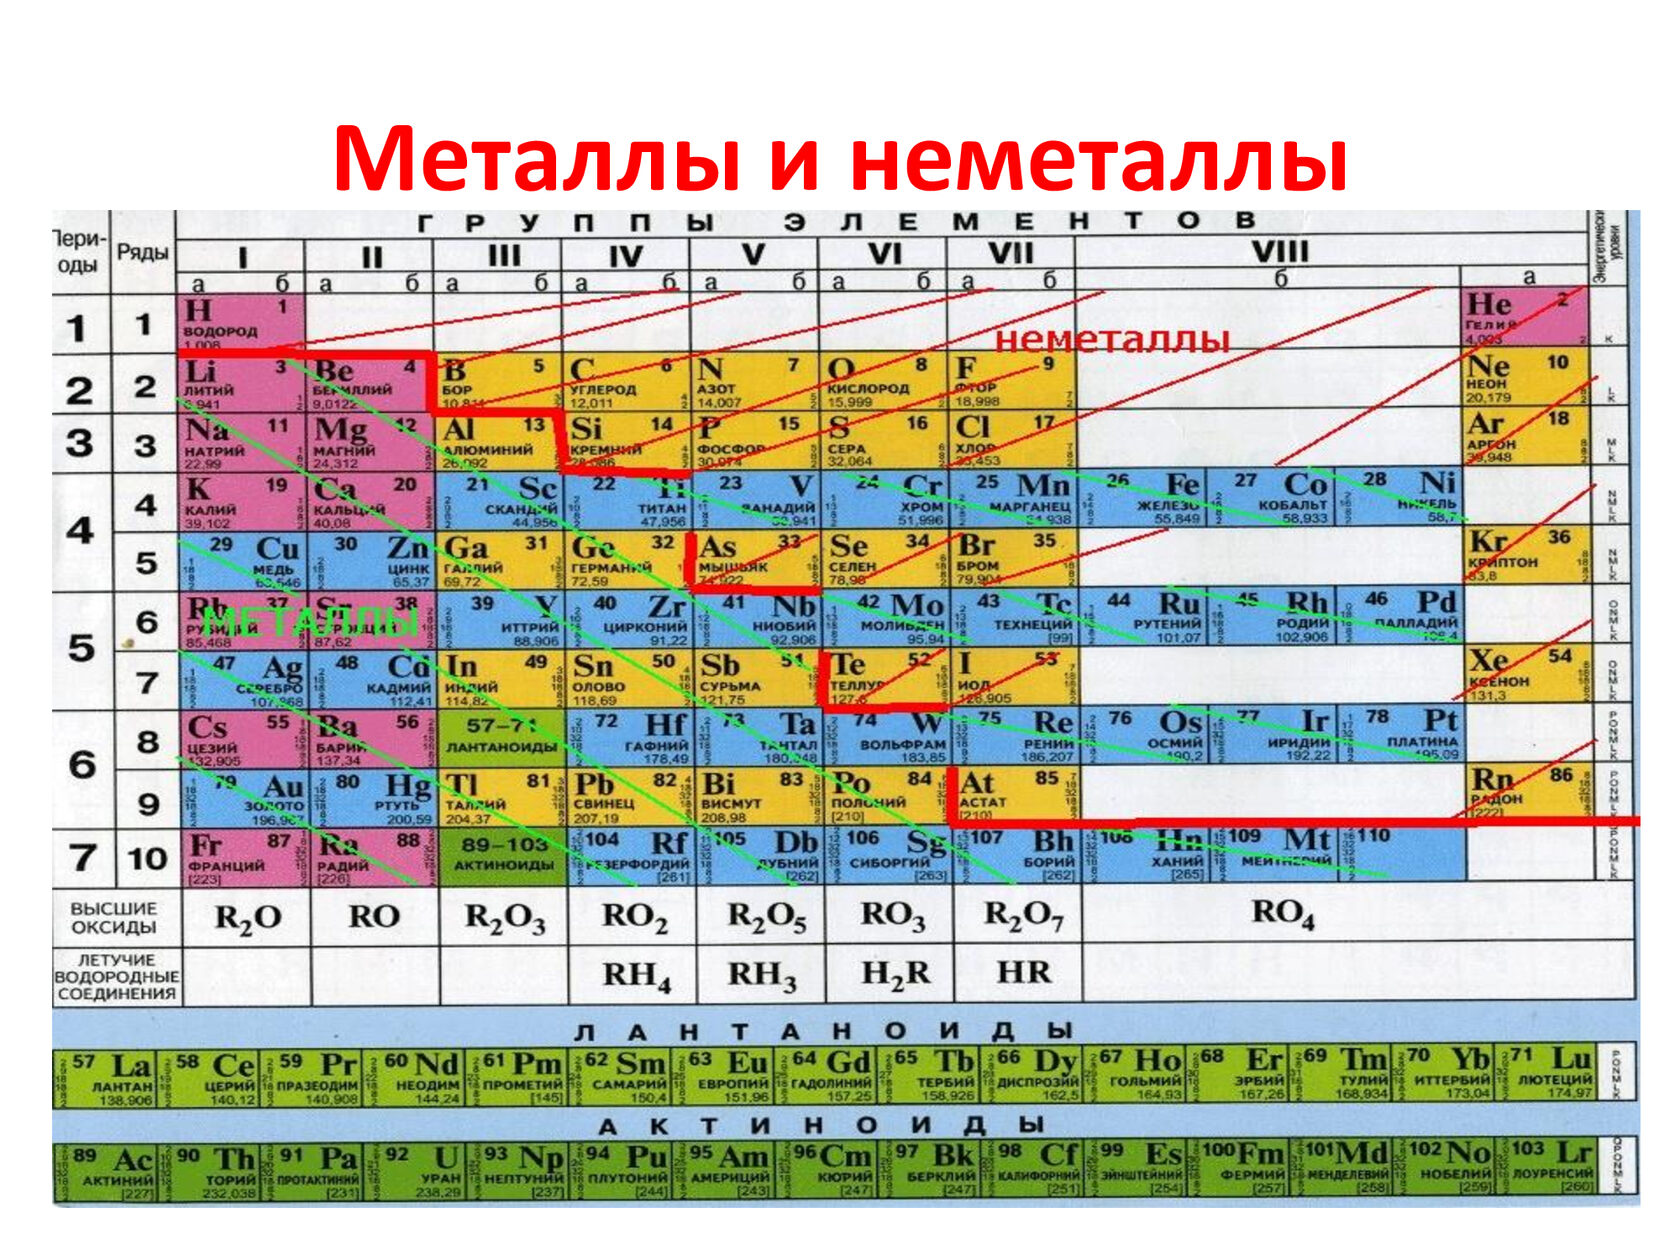 Названия групп неметаллов. Таблица Менделеева металлы и неметаллы. Химия металлы и неметаллы таблица. Химические элементы металлы и неметаллы. Таблица элементов Менделеева металлы и неметаллы.